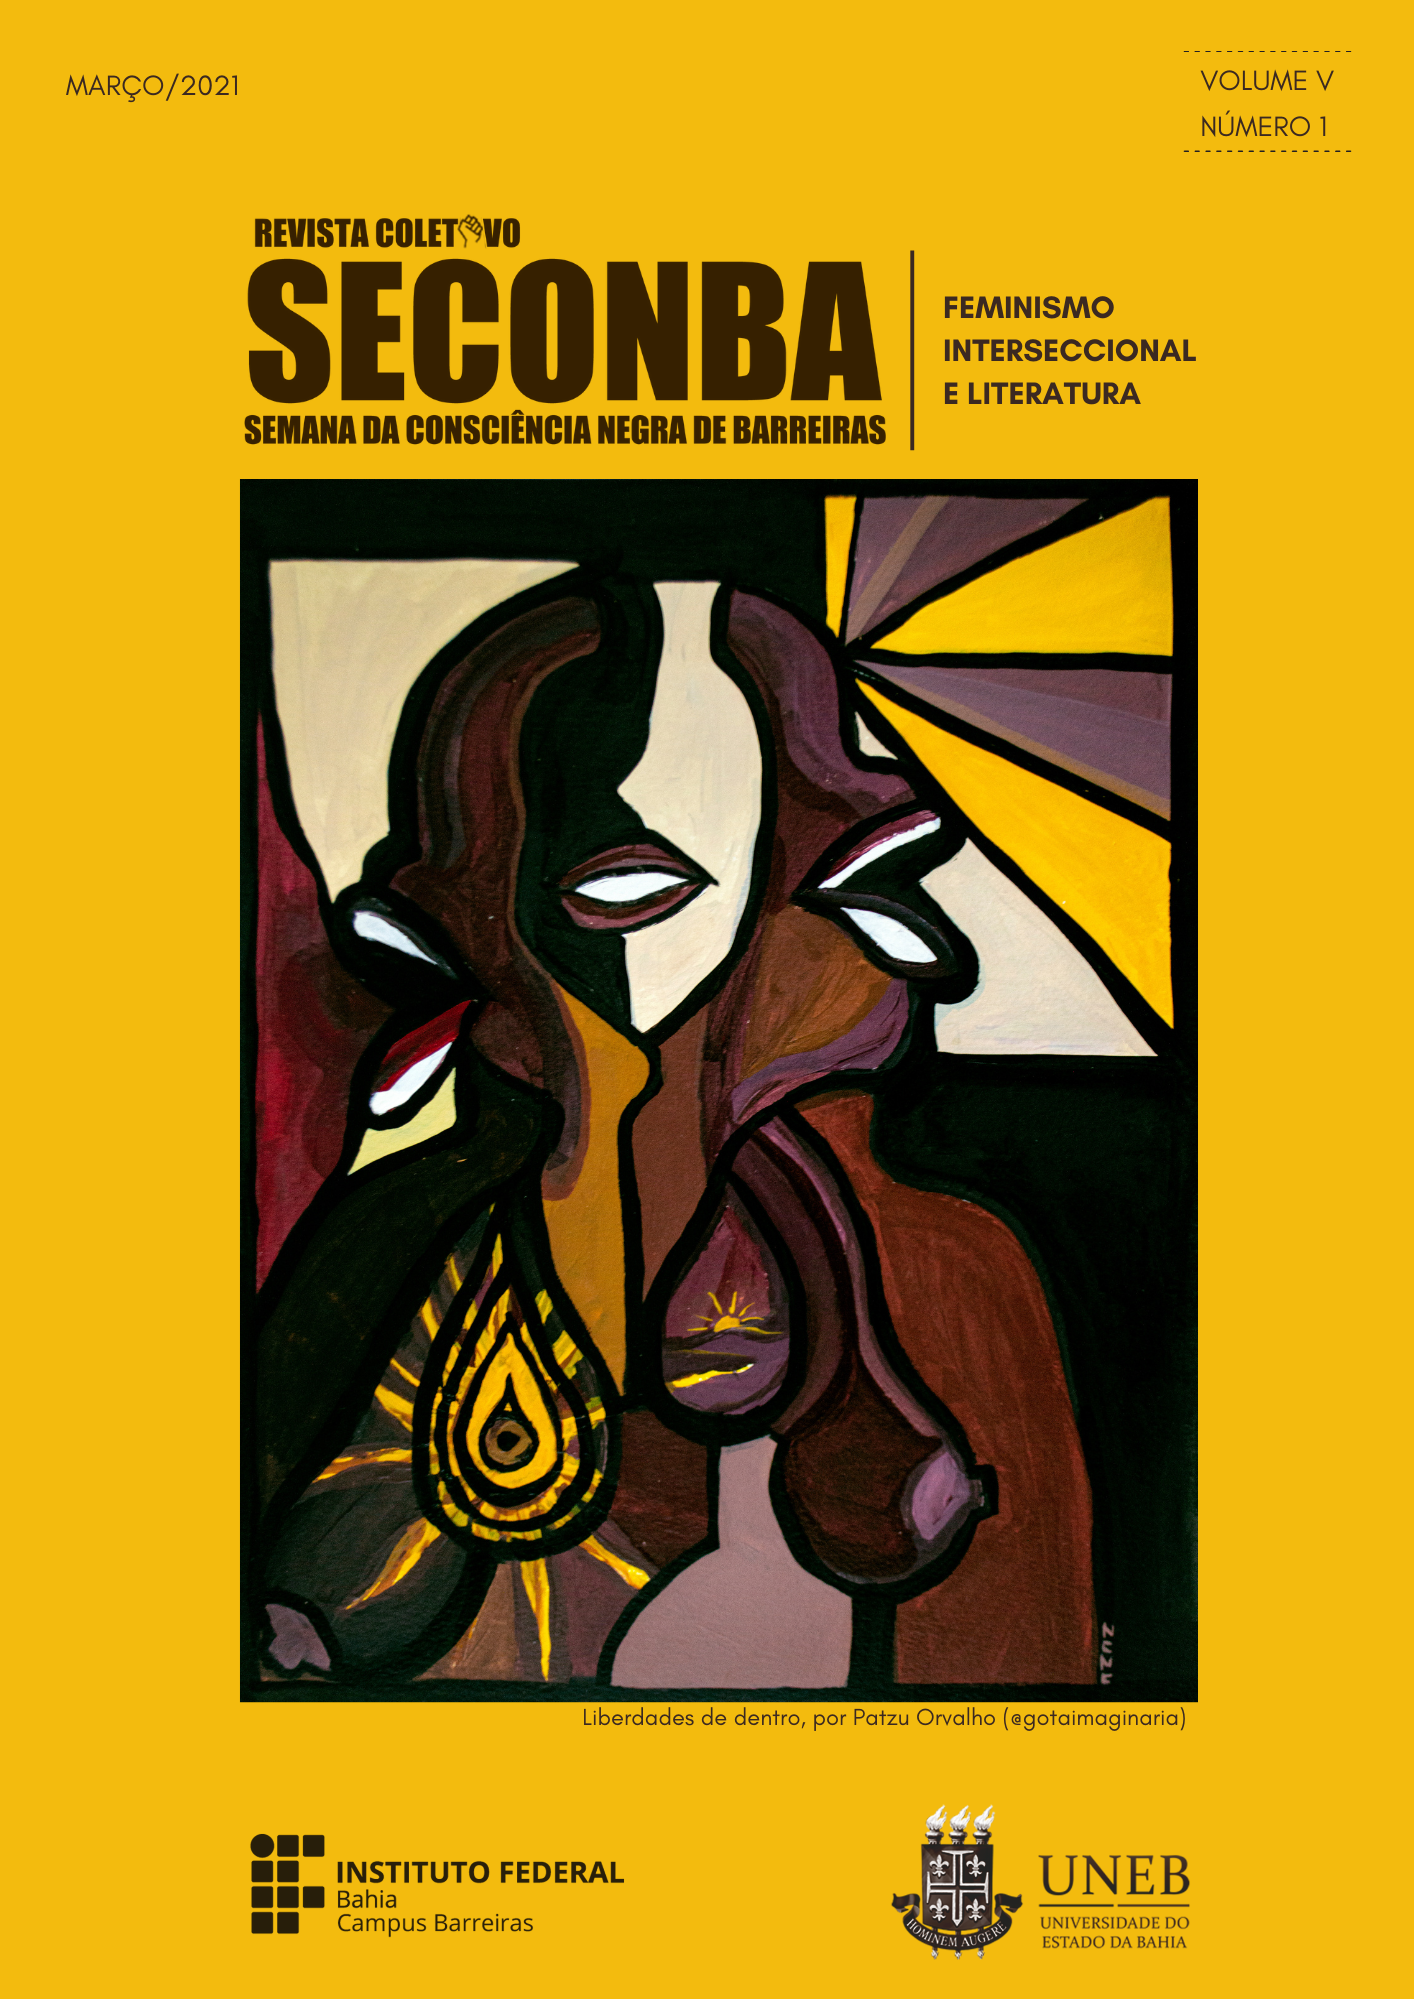 Arte da capa: Patzu Orvalho (@gotaimaginaria) / Edição da capa: Eduarda Escobar (GEGEF-IFBA)